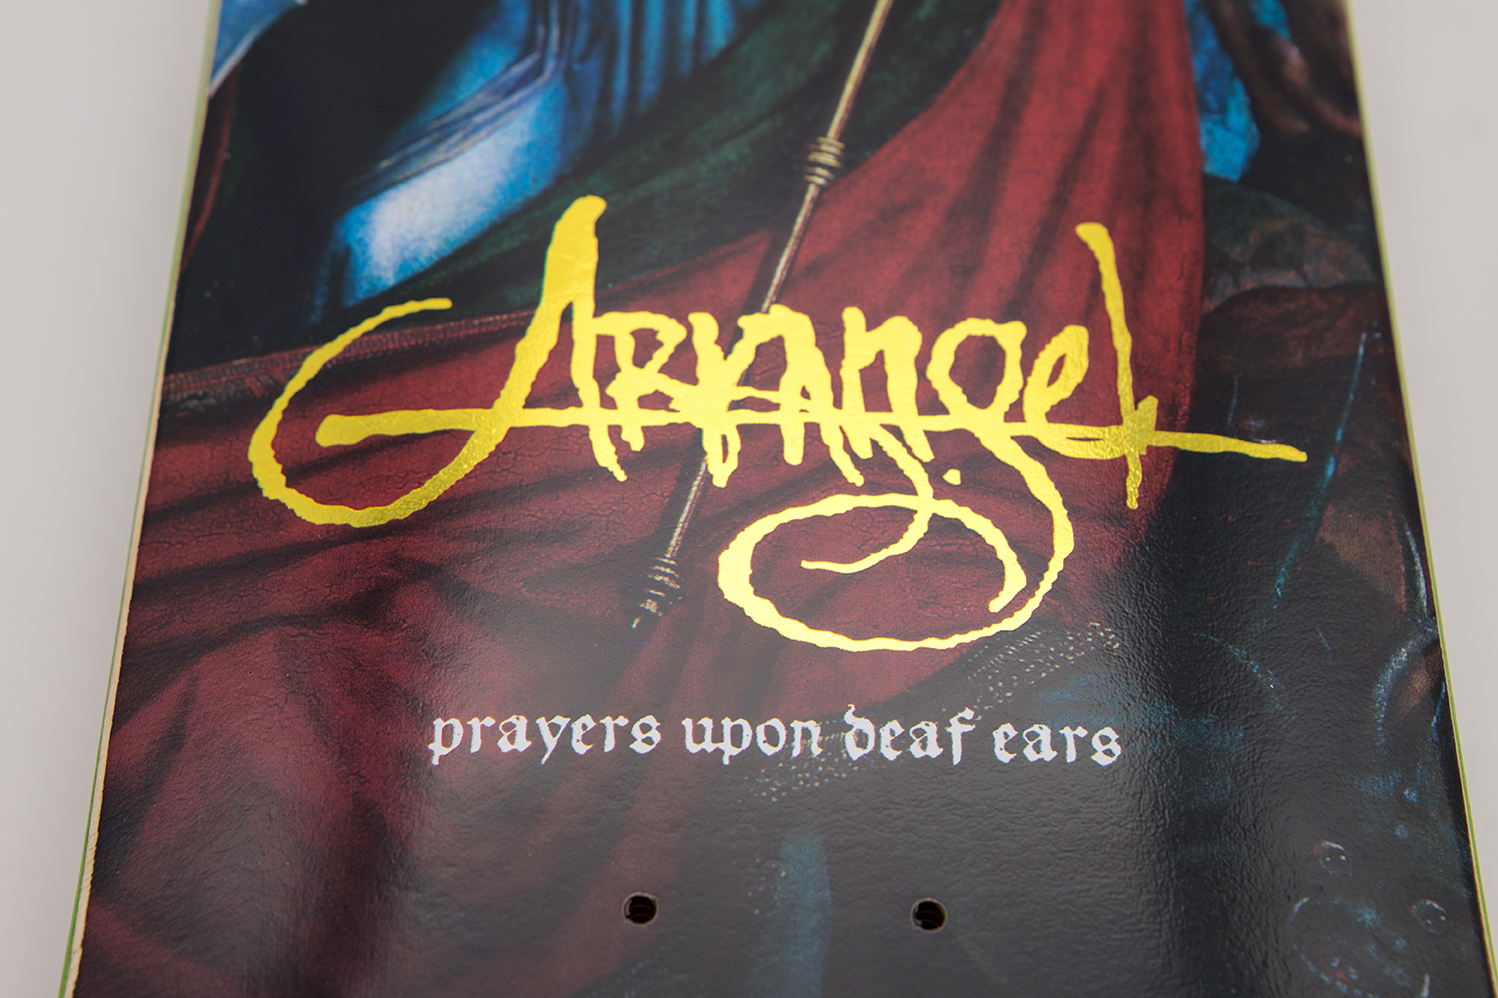 ARKANGEL "Prayers Upon Deaf Ears" Skate Deck Edition II